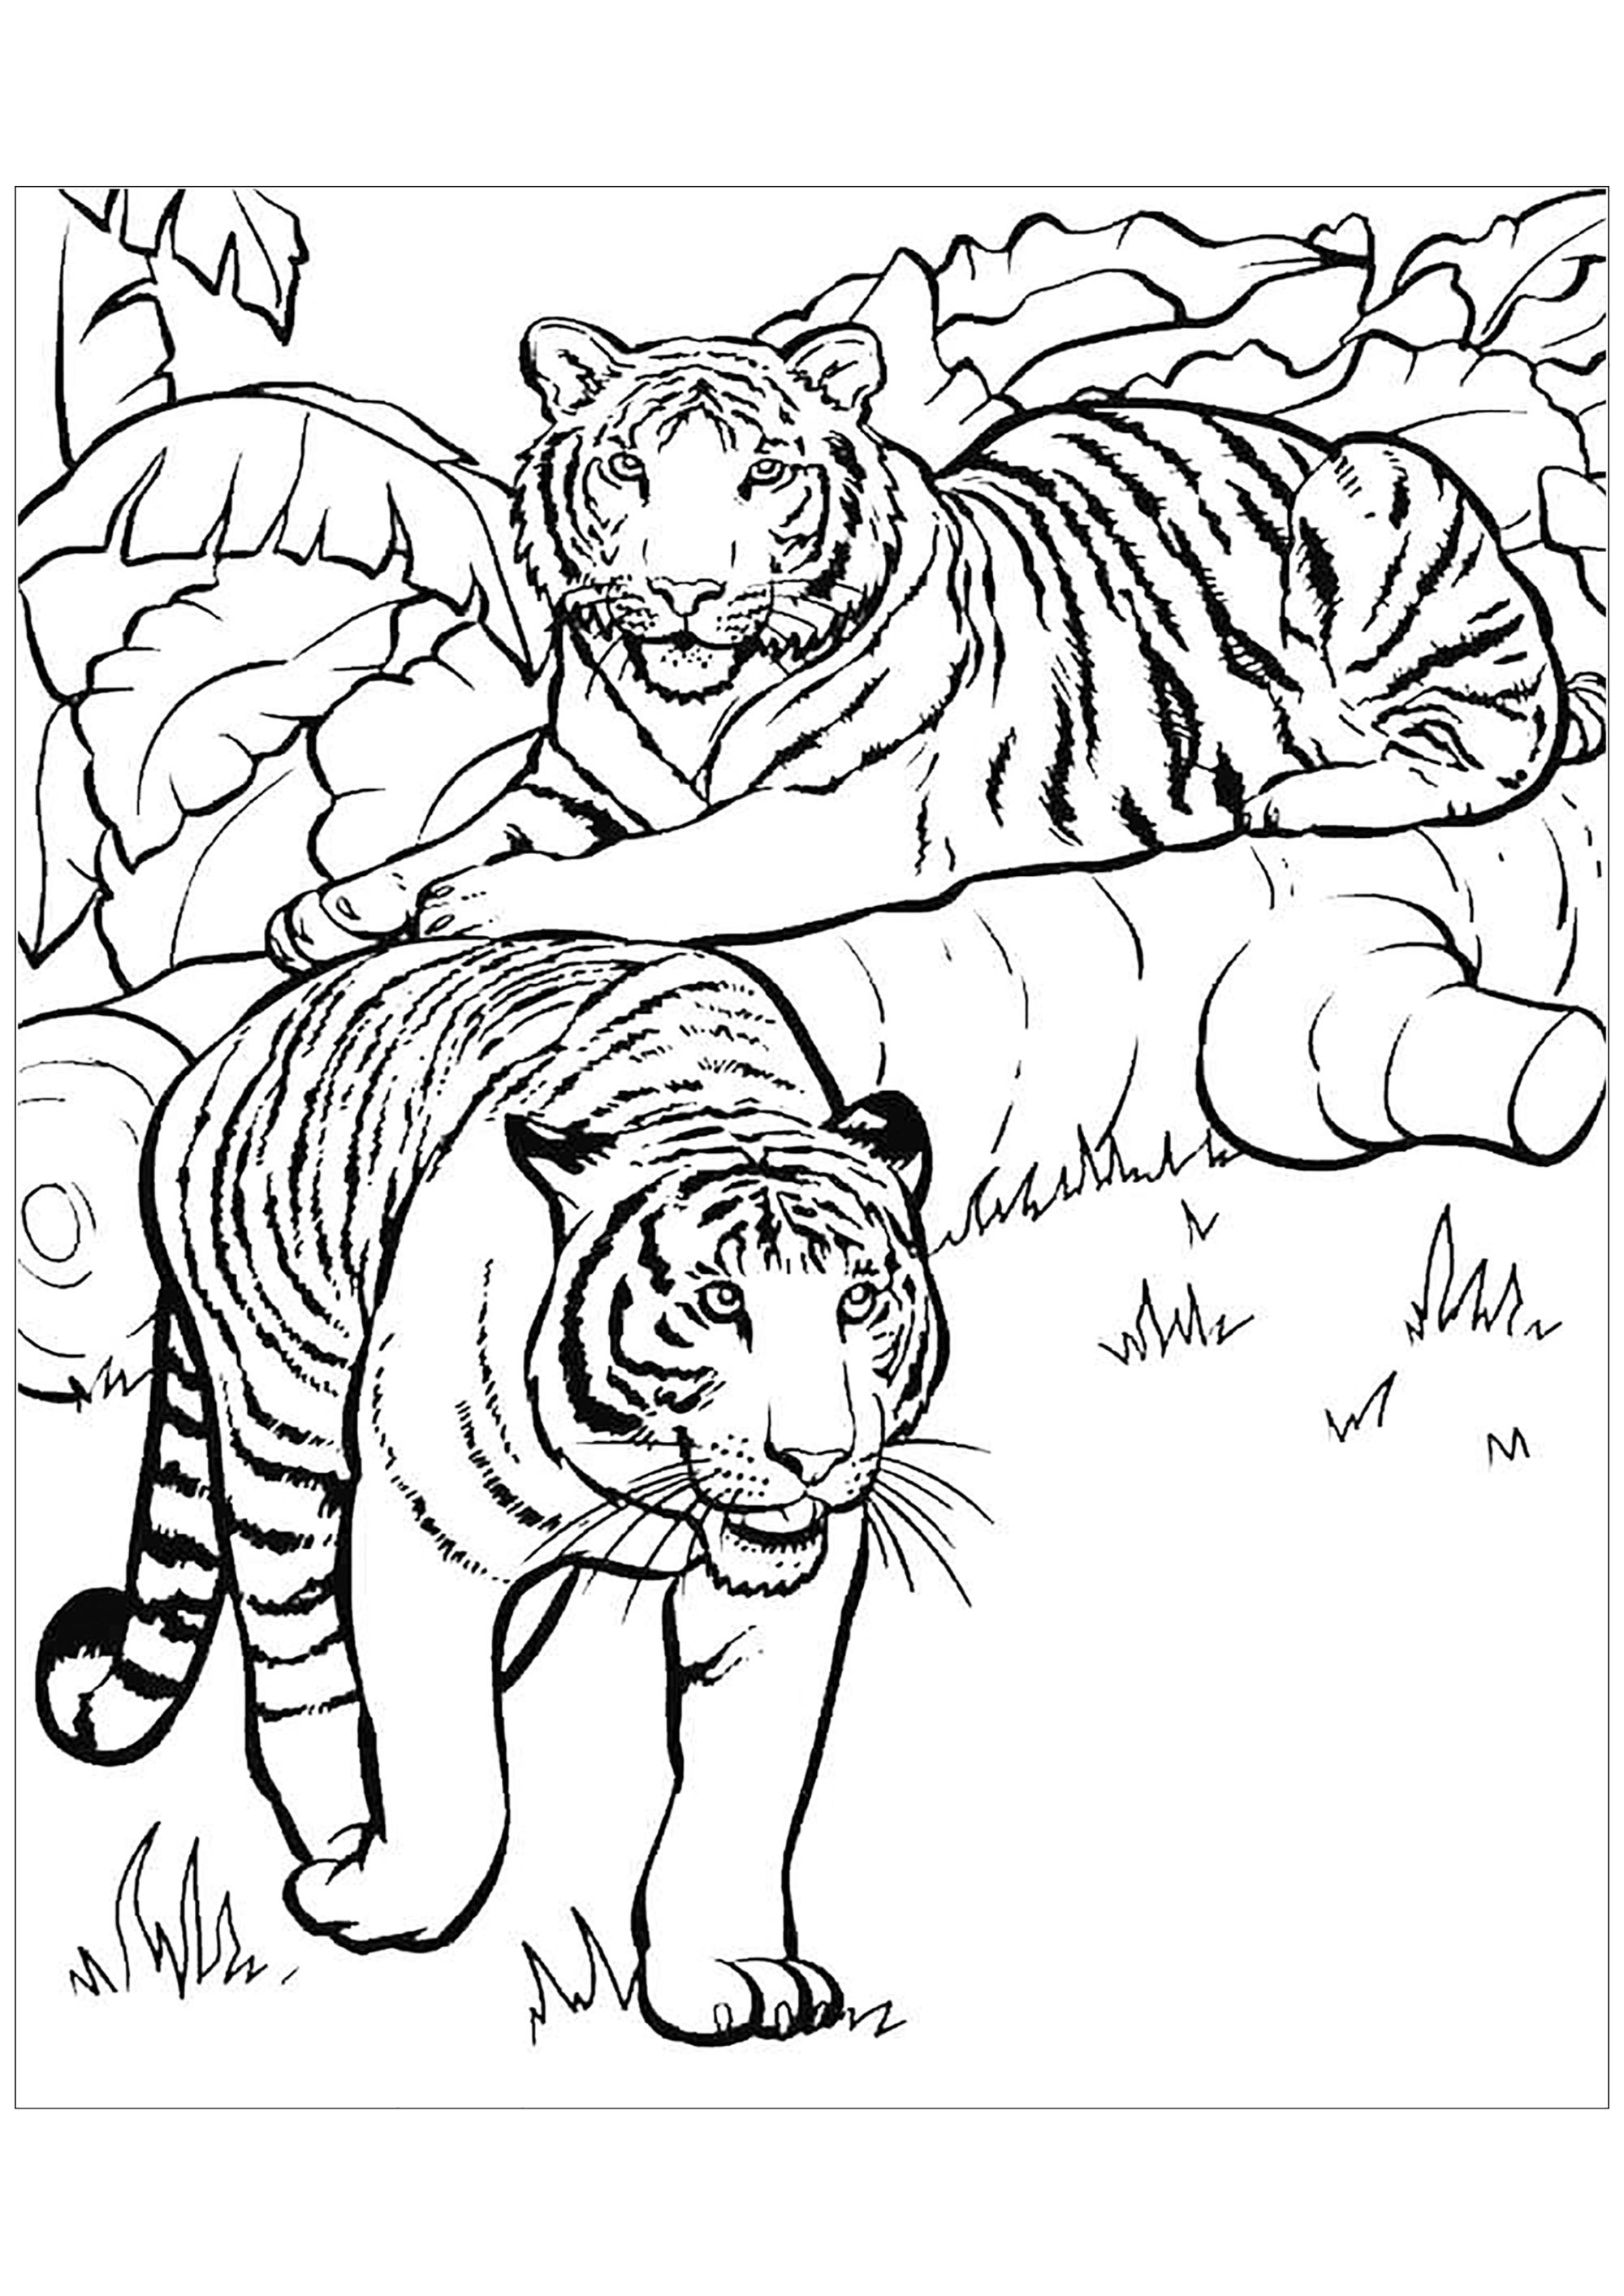 Dessin de tigre à télécharger et imprimer pour enfants